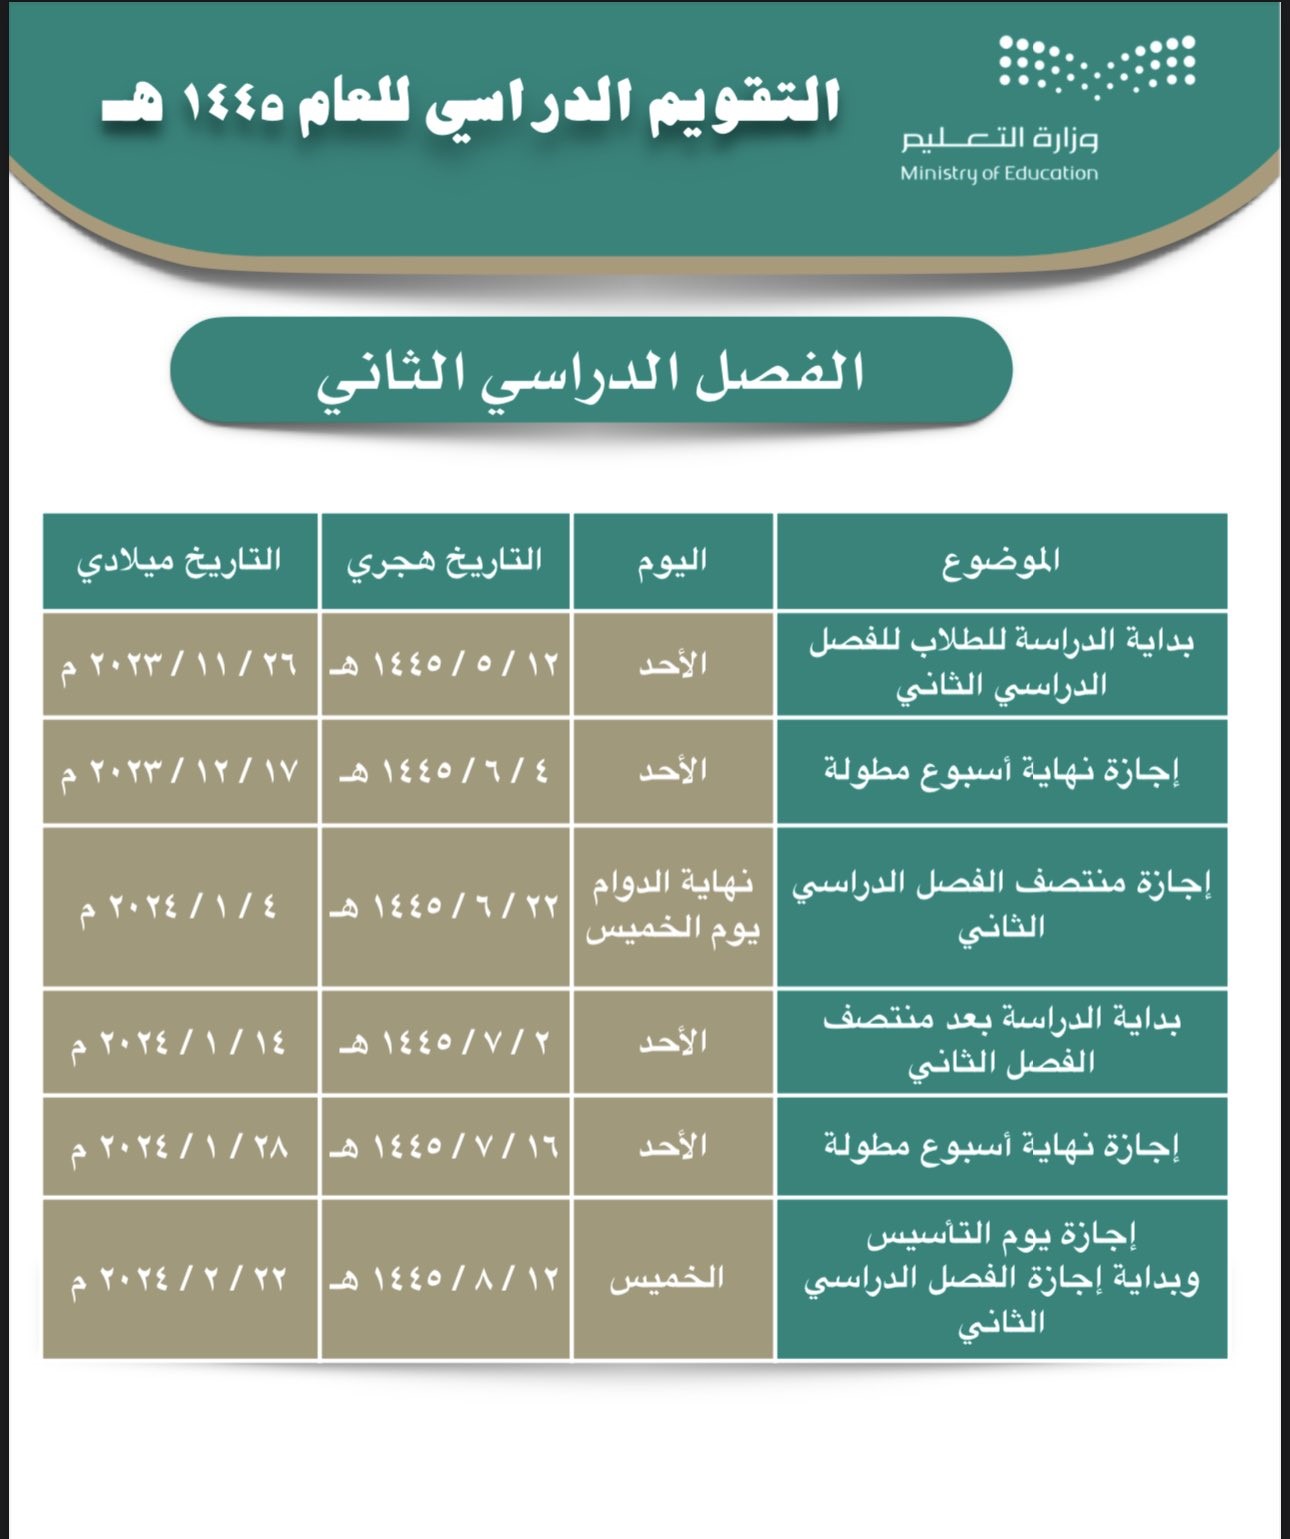 "تعداد تنازلي" موعد الاختبارات النهائية الفصل الثاني 1445 في السعودية حسب التقويم الدراسي